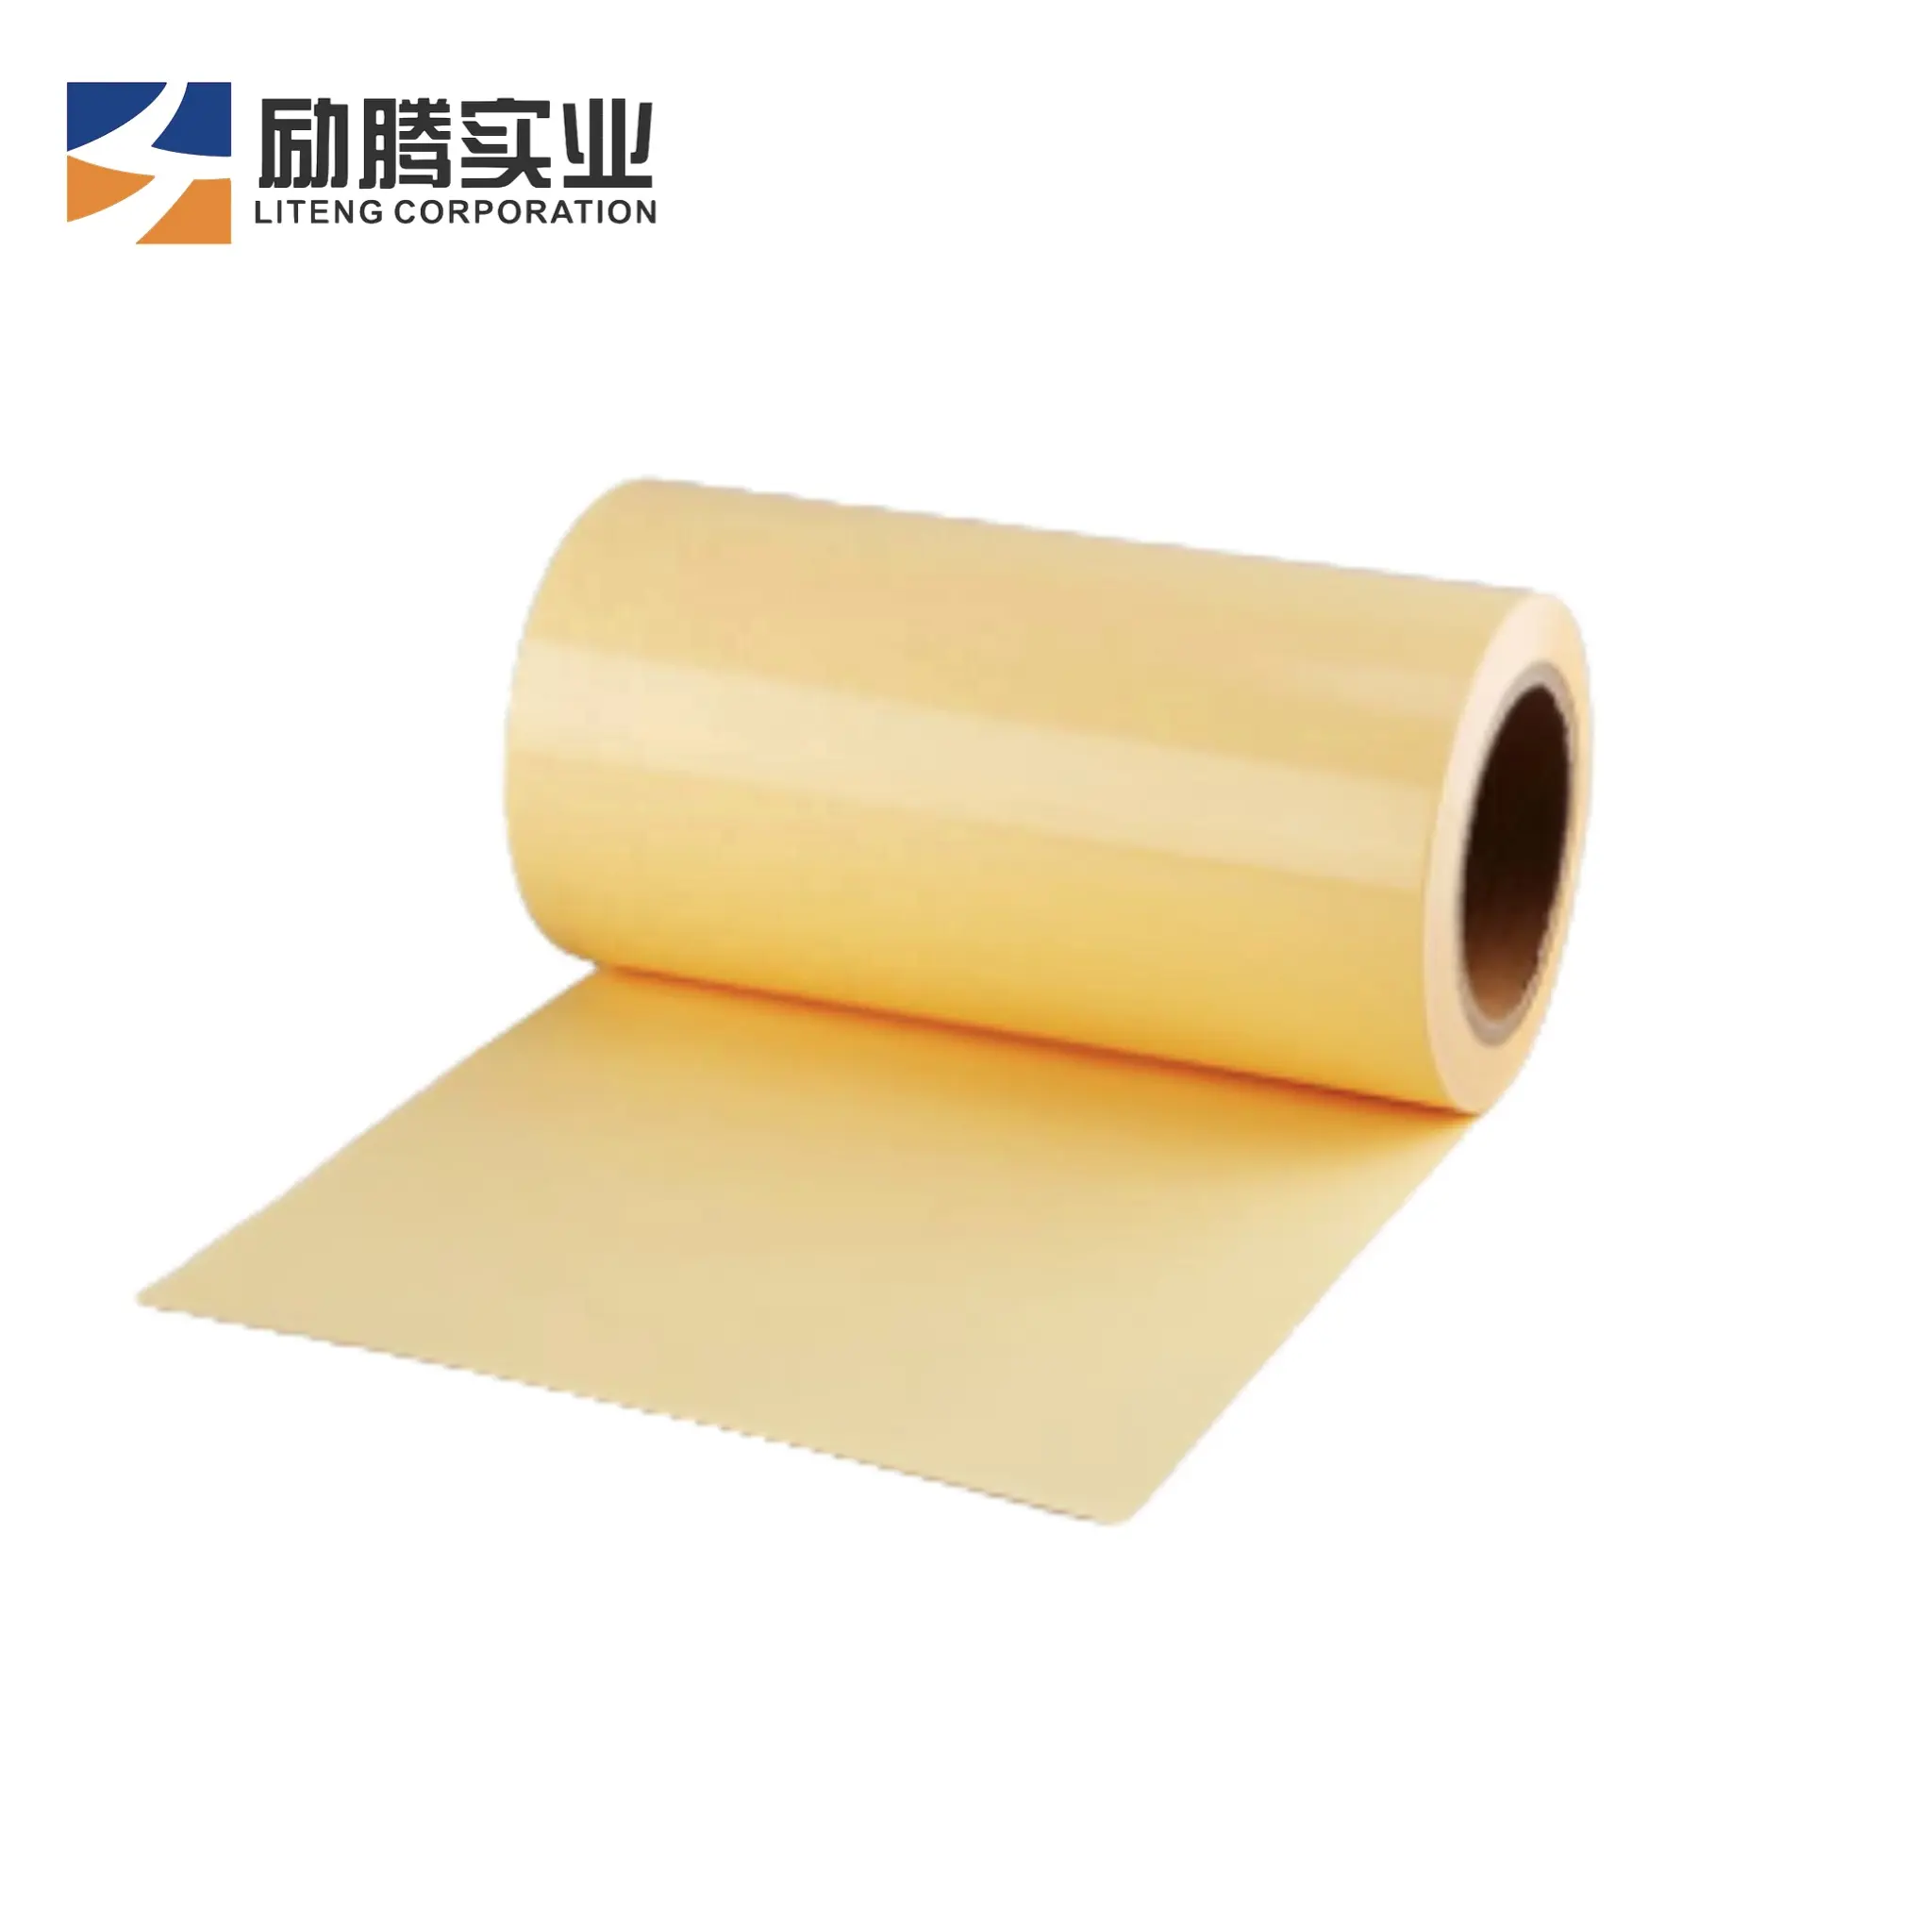 Papier siliconé glassine jaune de haute qualité 80g pour rubans adhésifs et doublure d'étiquettes